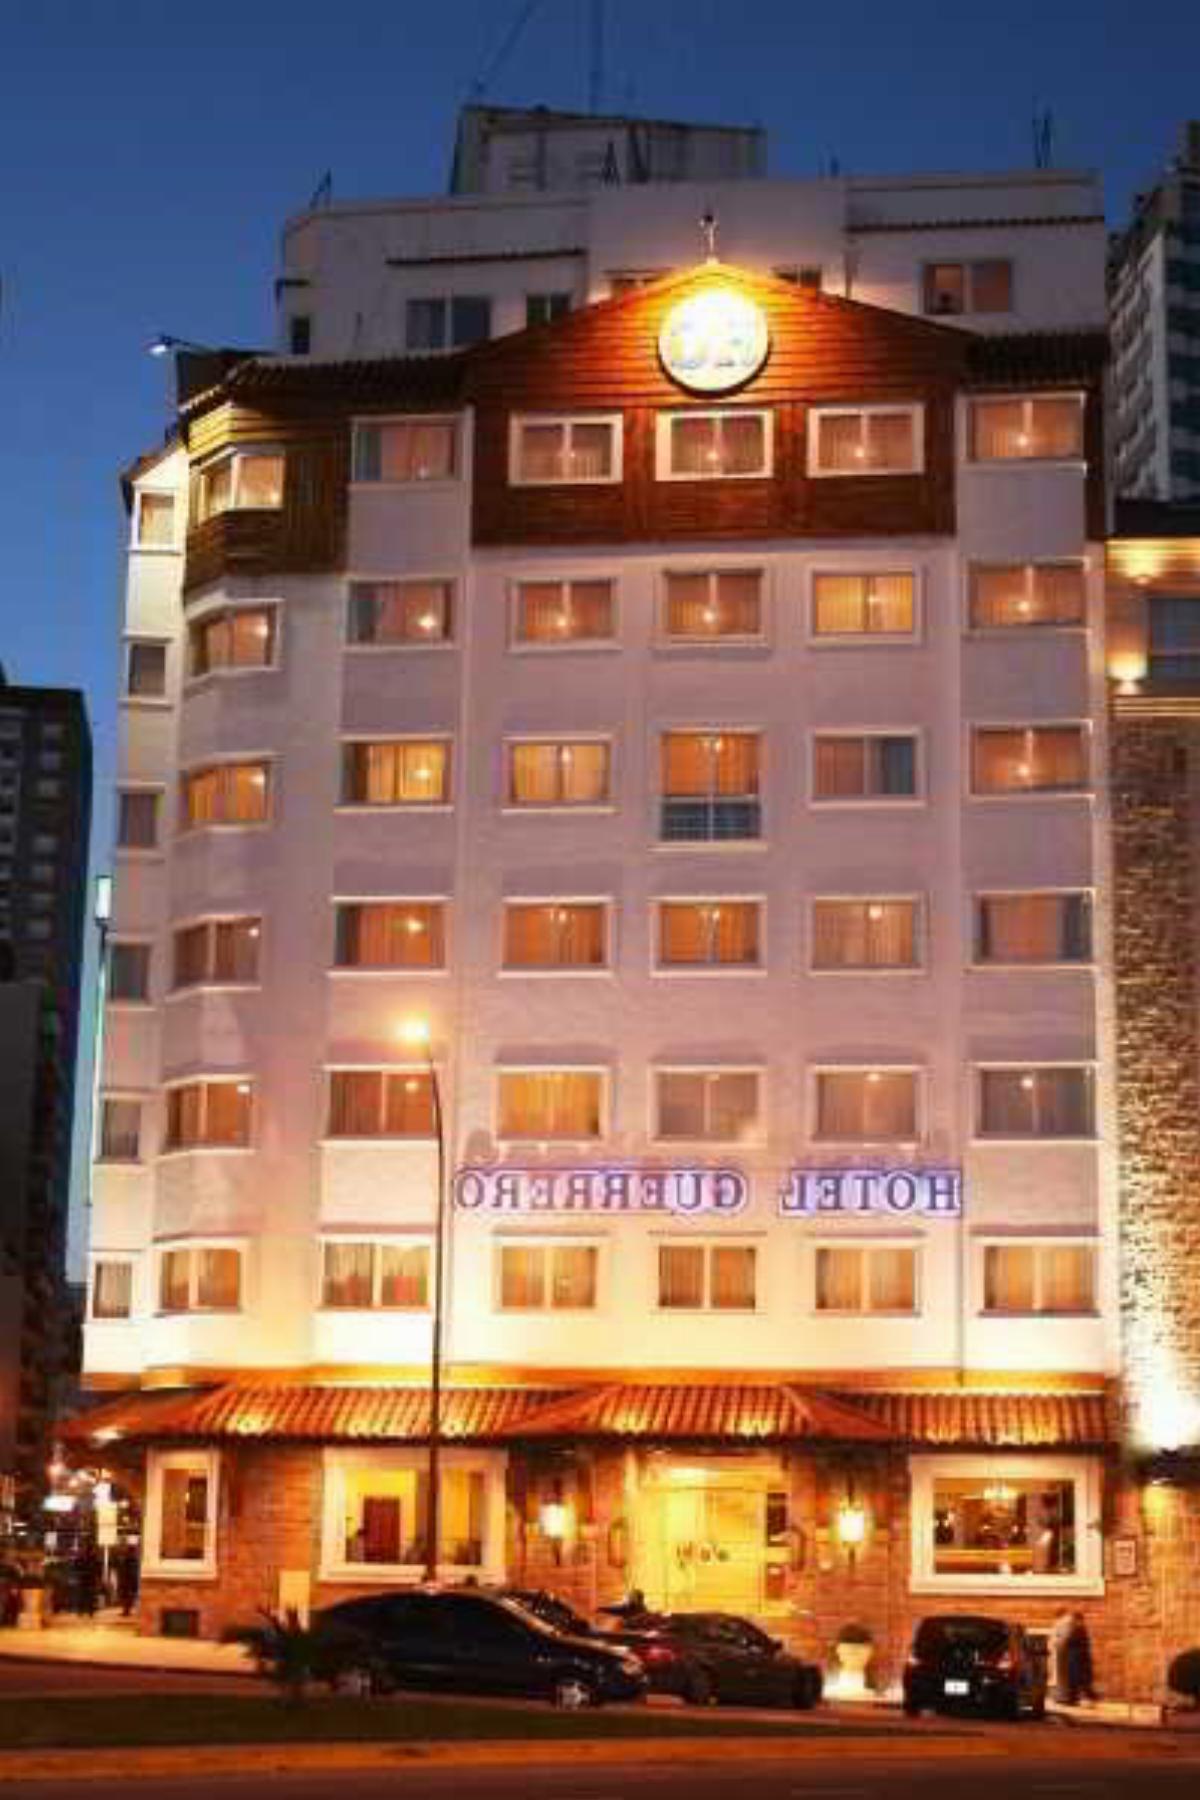 Guerrero Hotel Mar del Plata Argentina